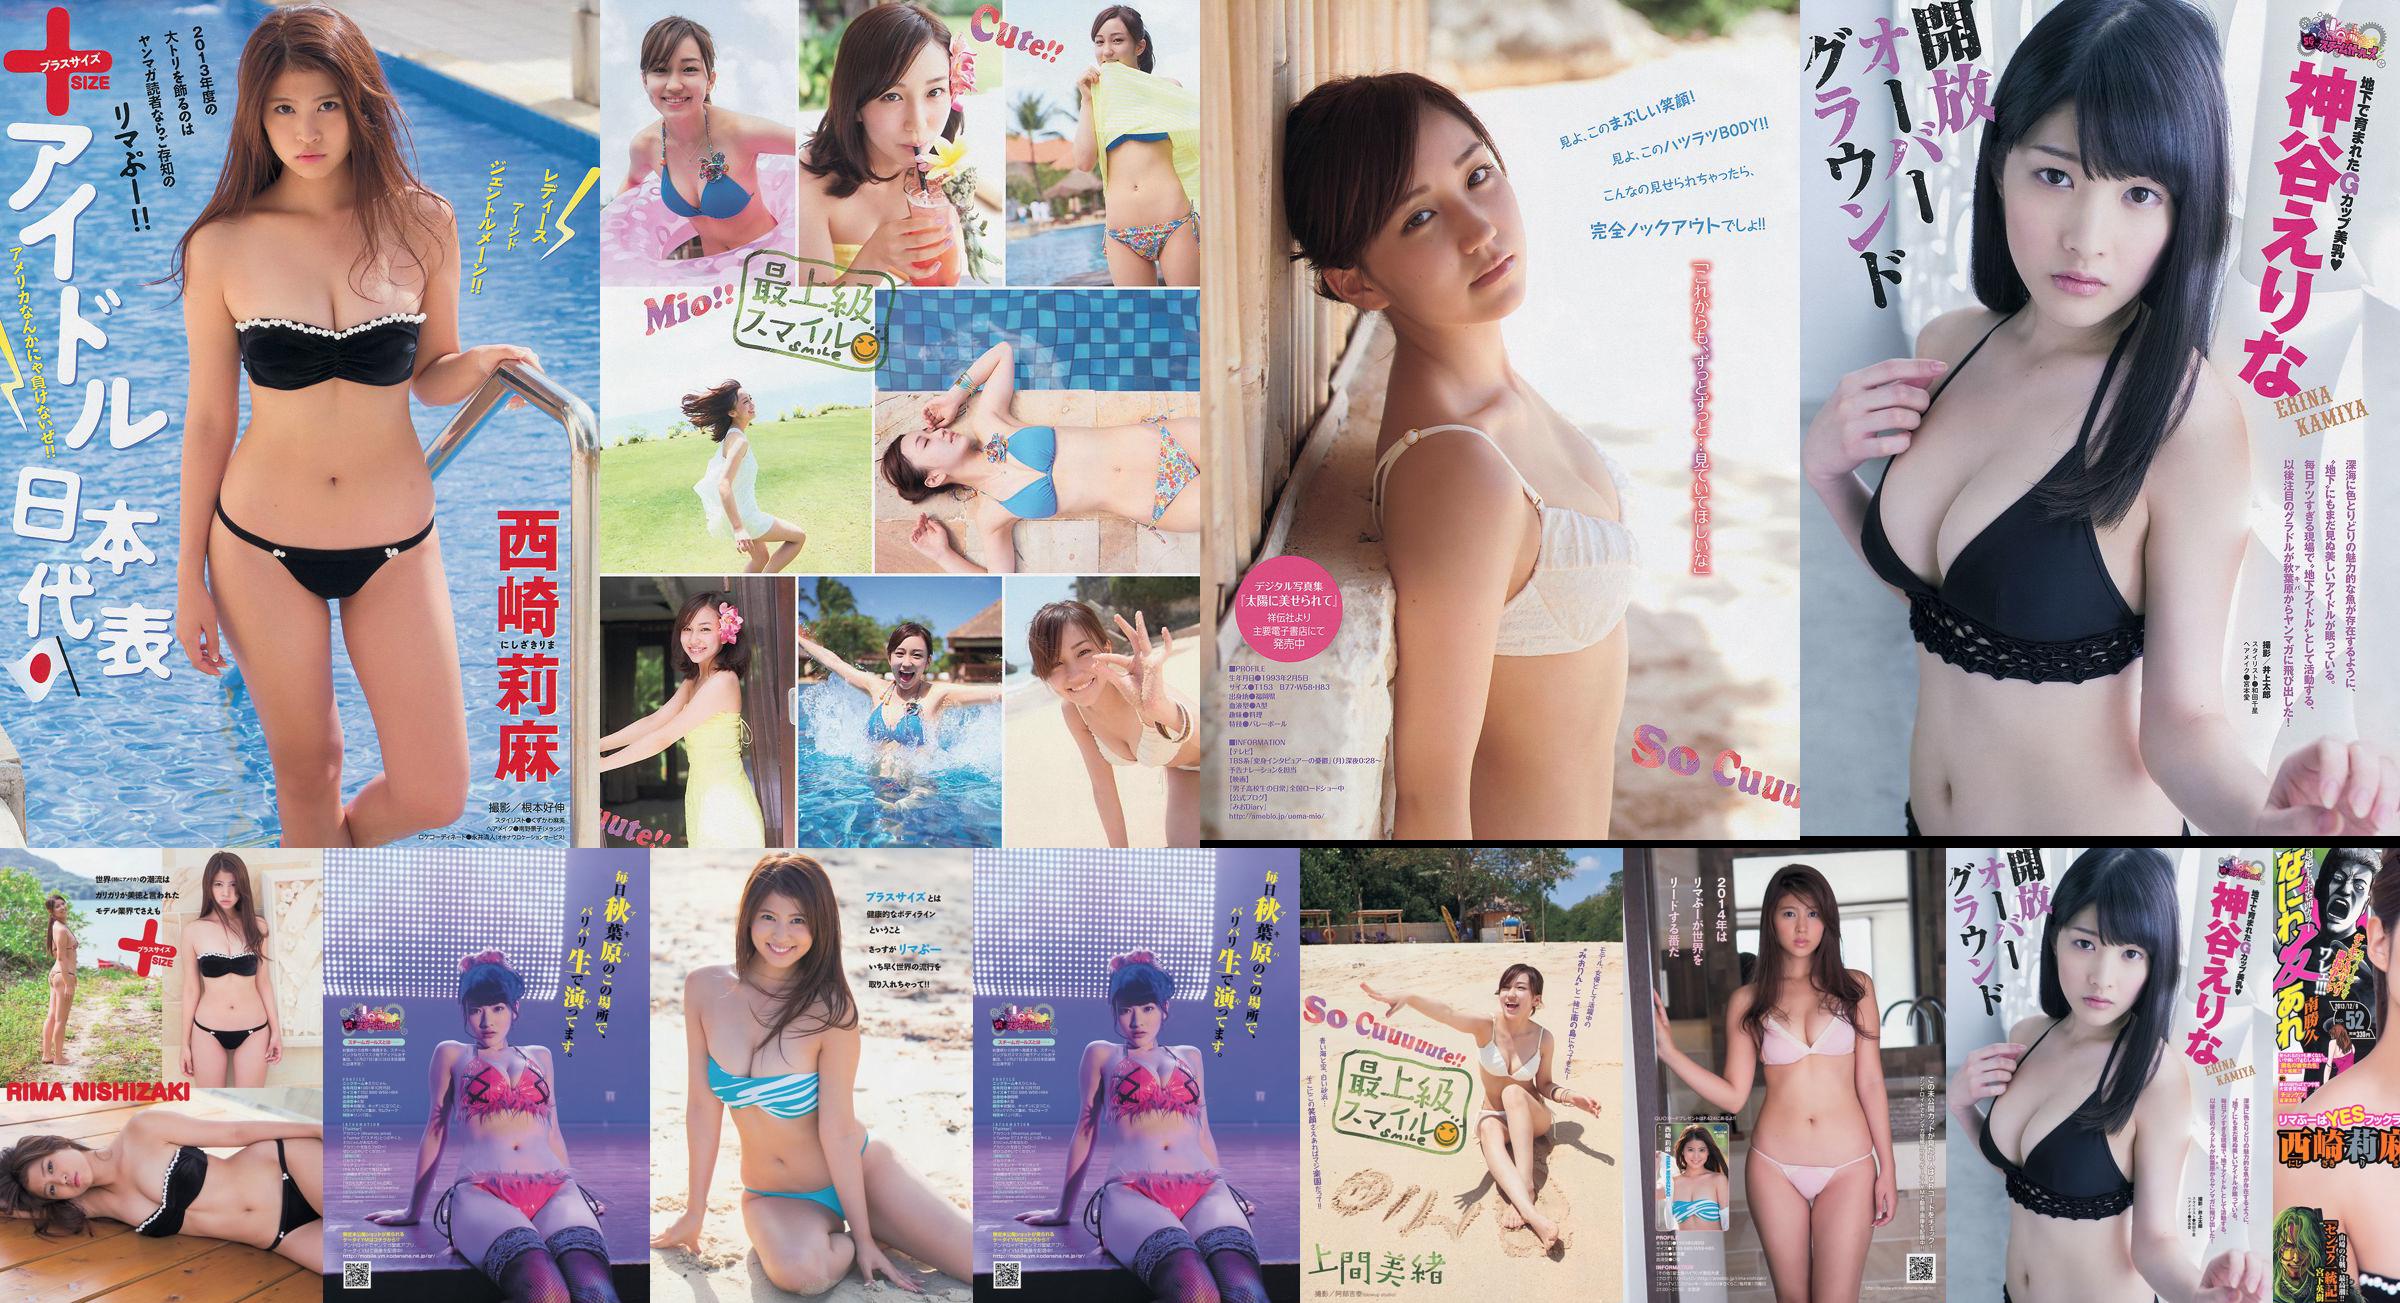 [Young Magazine] Rima Nishizaki Mio Uema Erina Kamiya 2013 No.52 Photo Moshi No.7ce231 第2頁